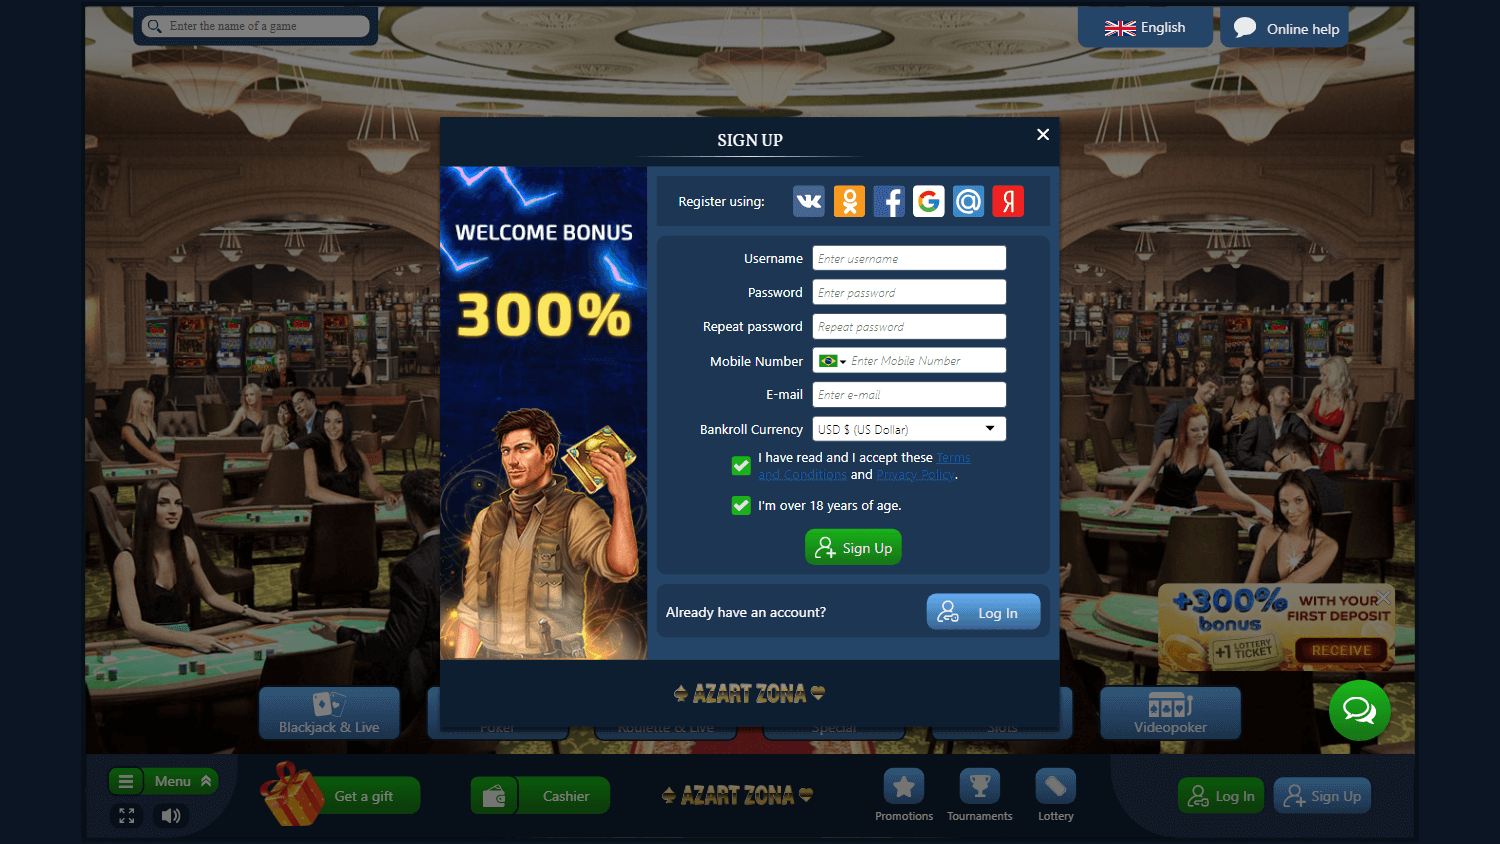 azart_zona_casino_homepage_desktop